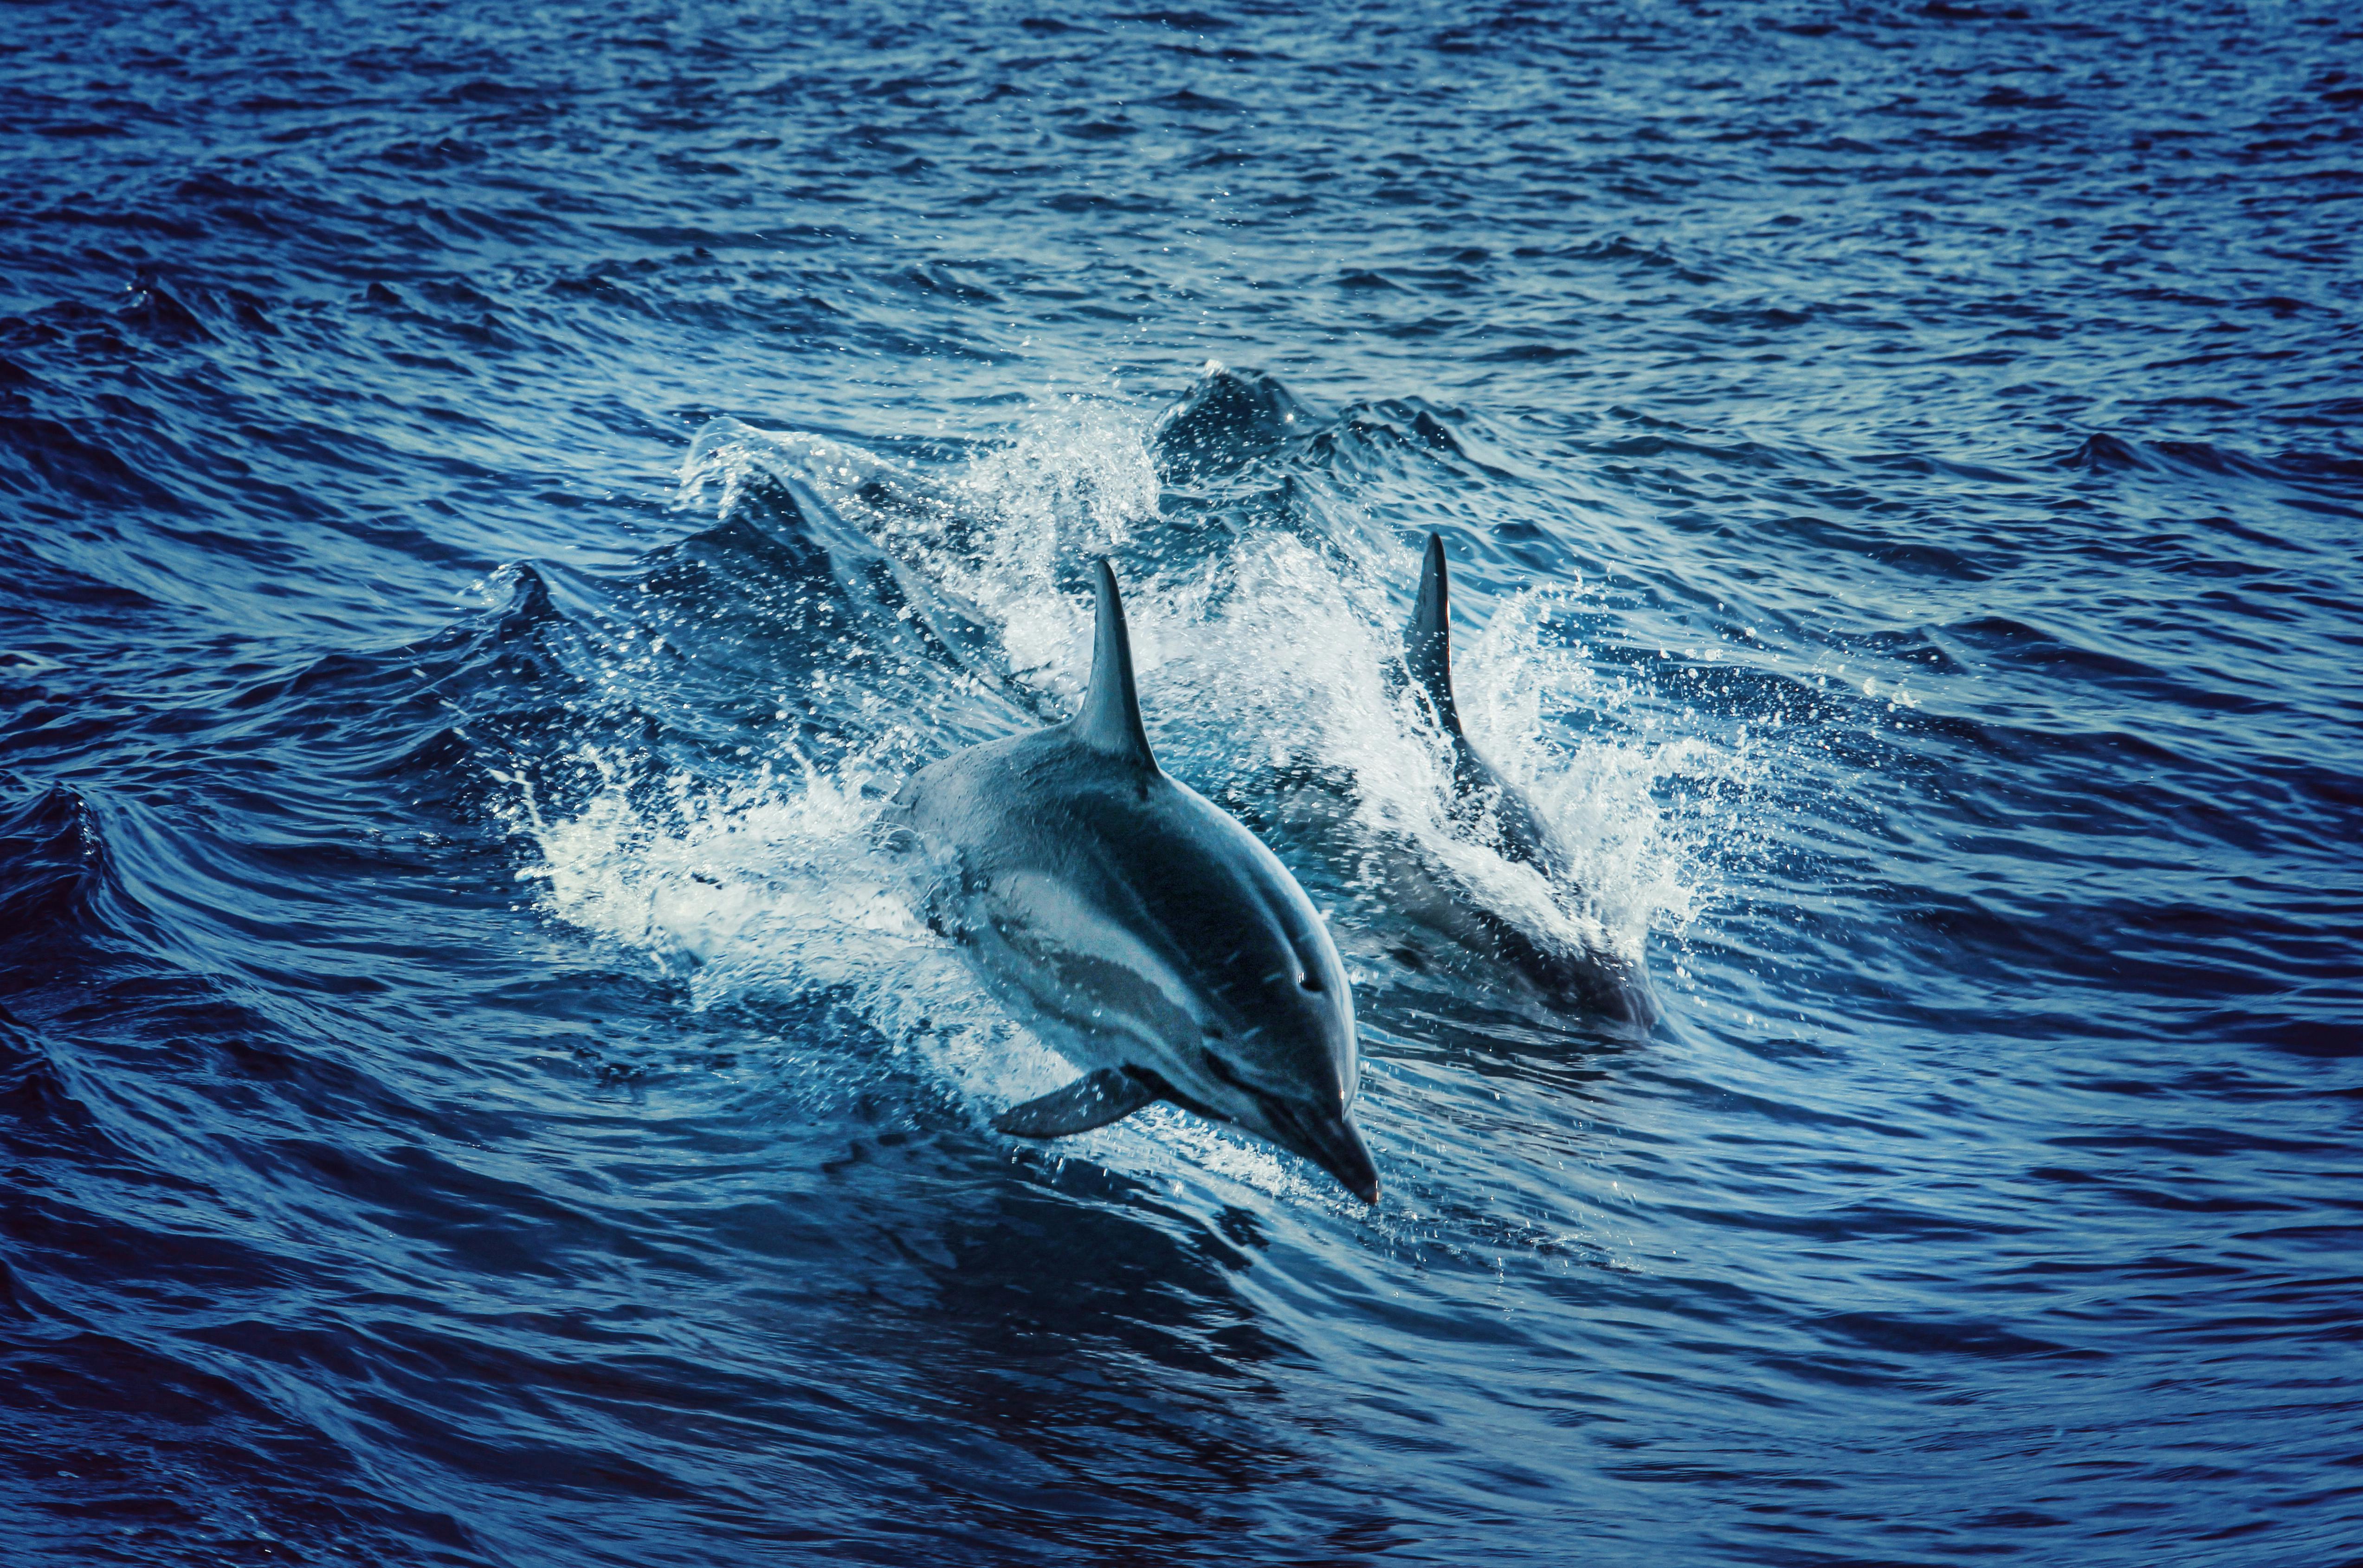 Nền Máy Tính Blog Dolphin  Cá heo png tải về  Miễn phí trong suốt Cá Heo  png Tải về